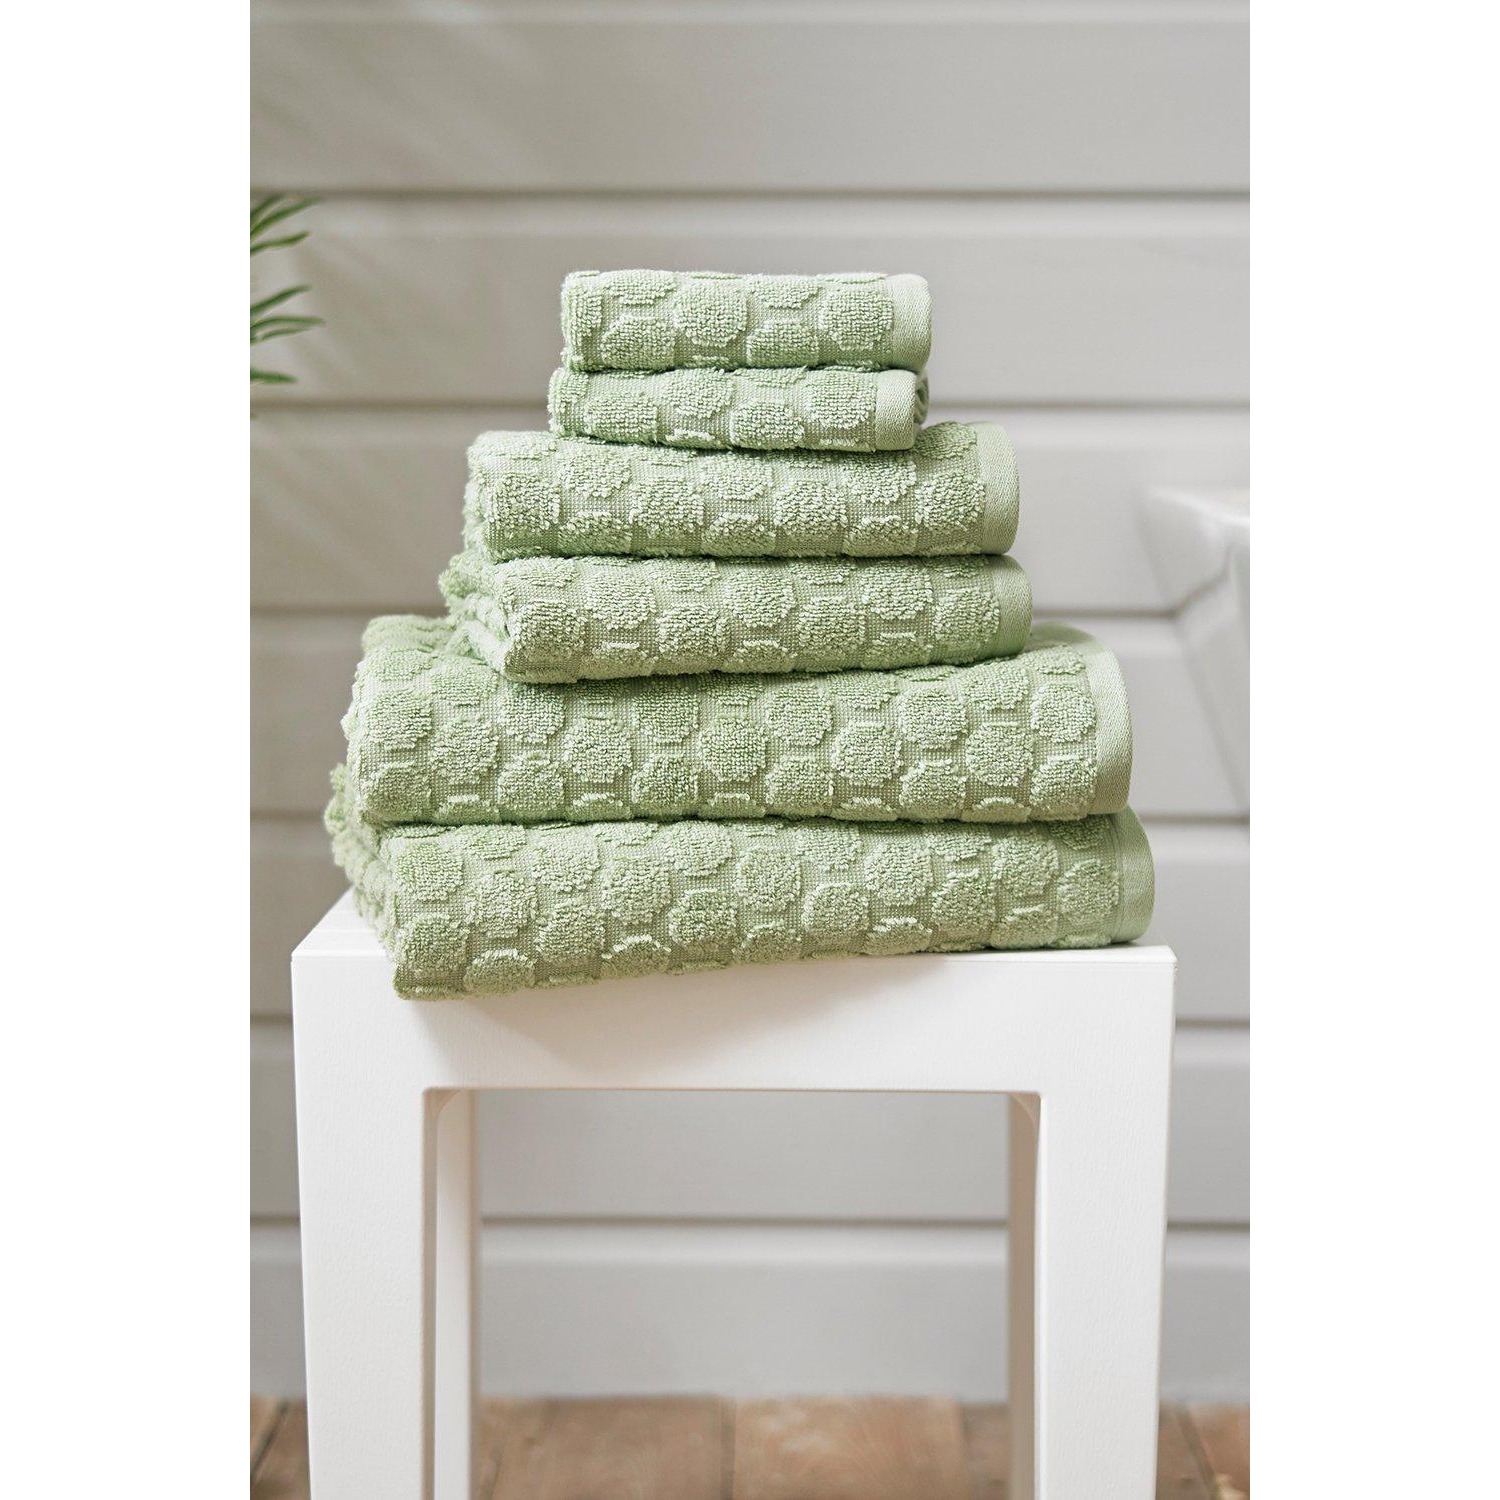 Sierra Quik Dri Cotton Towel - image 1